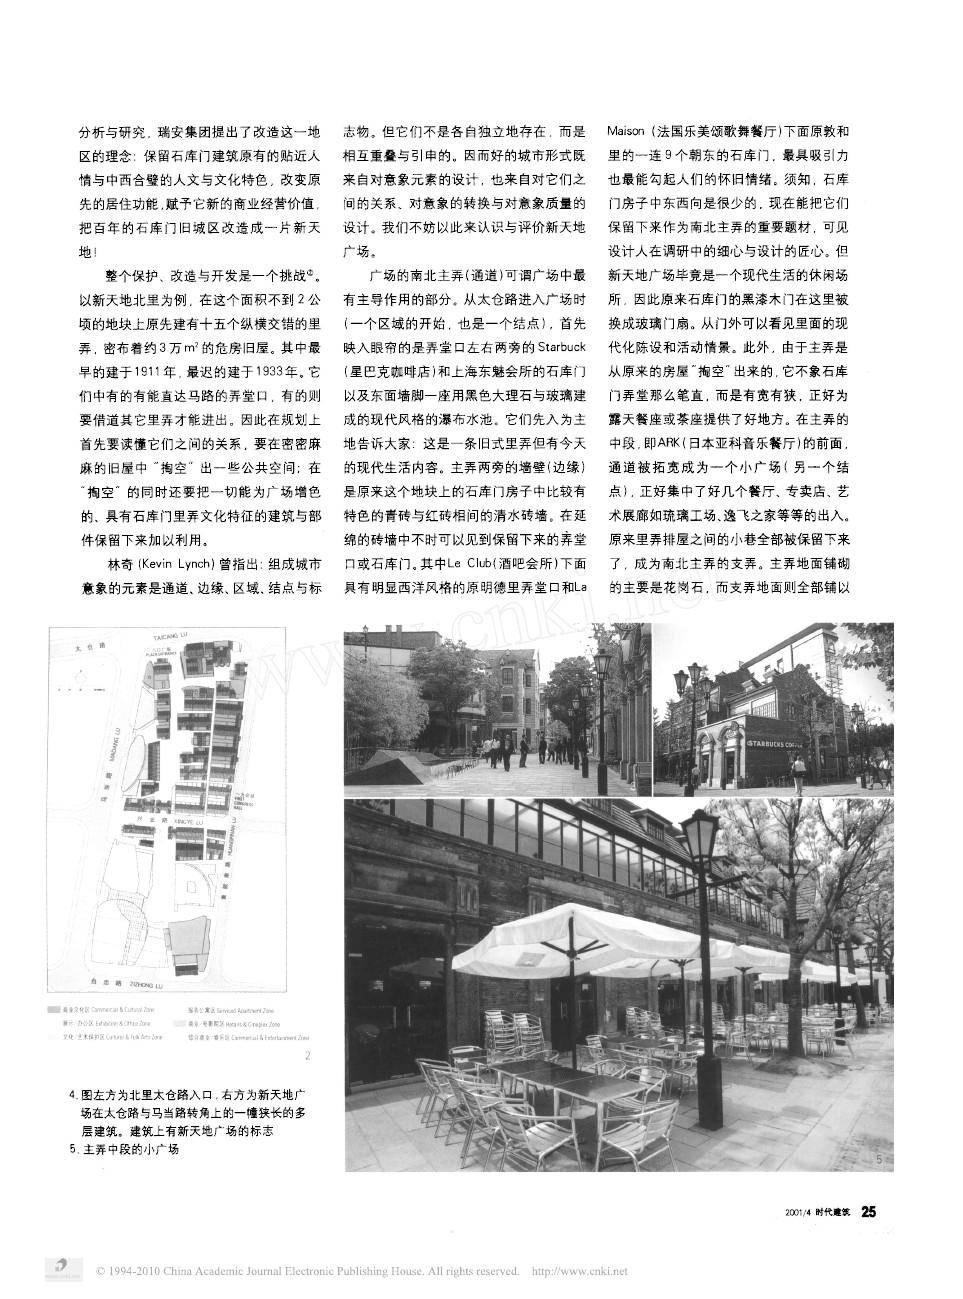 上海新天地广场_旧城改造的一种模式